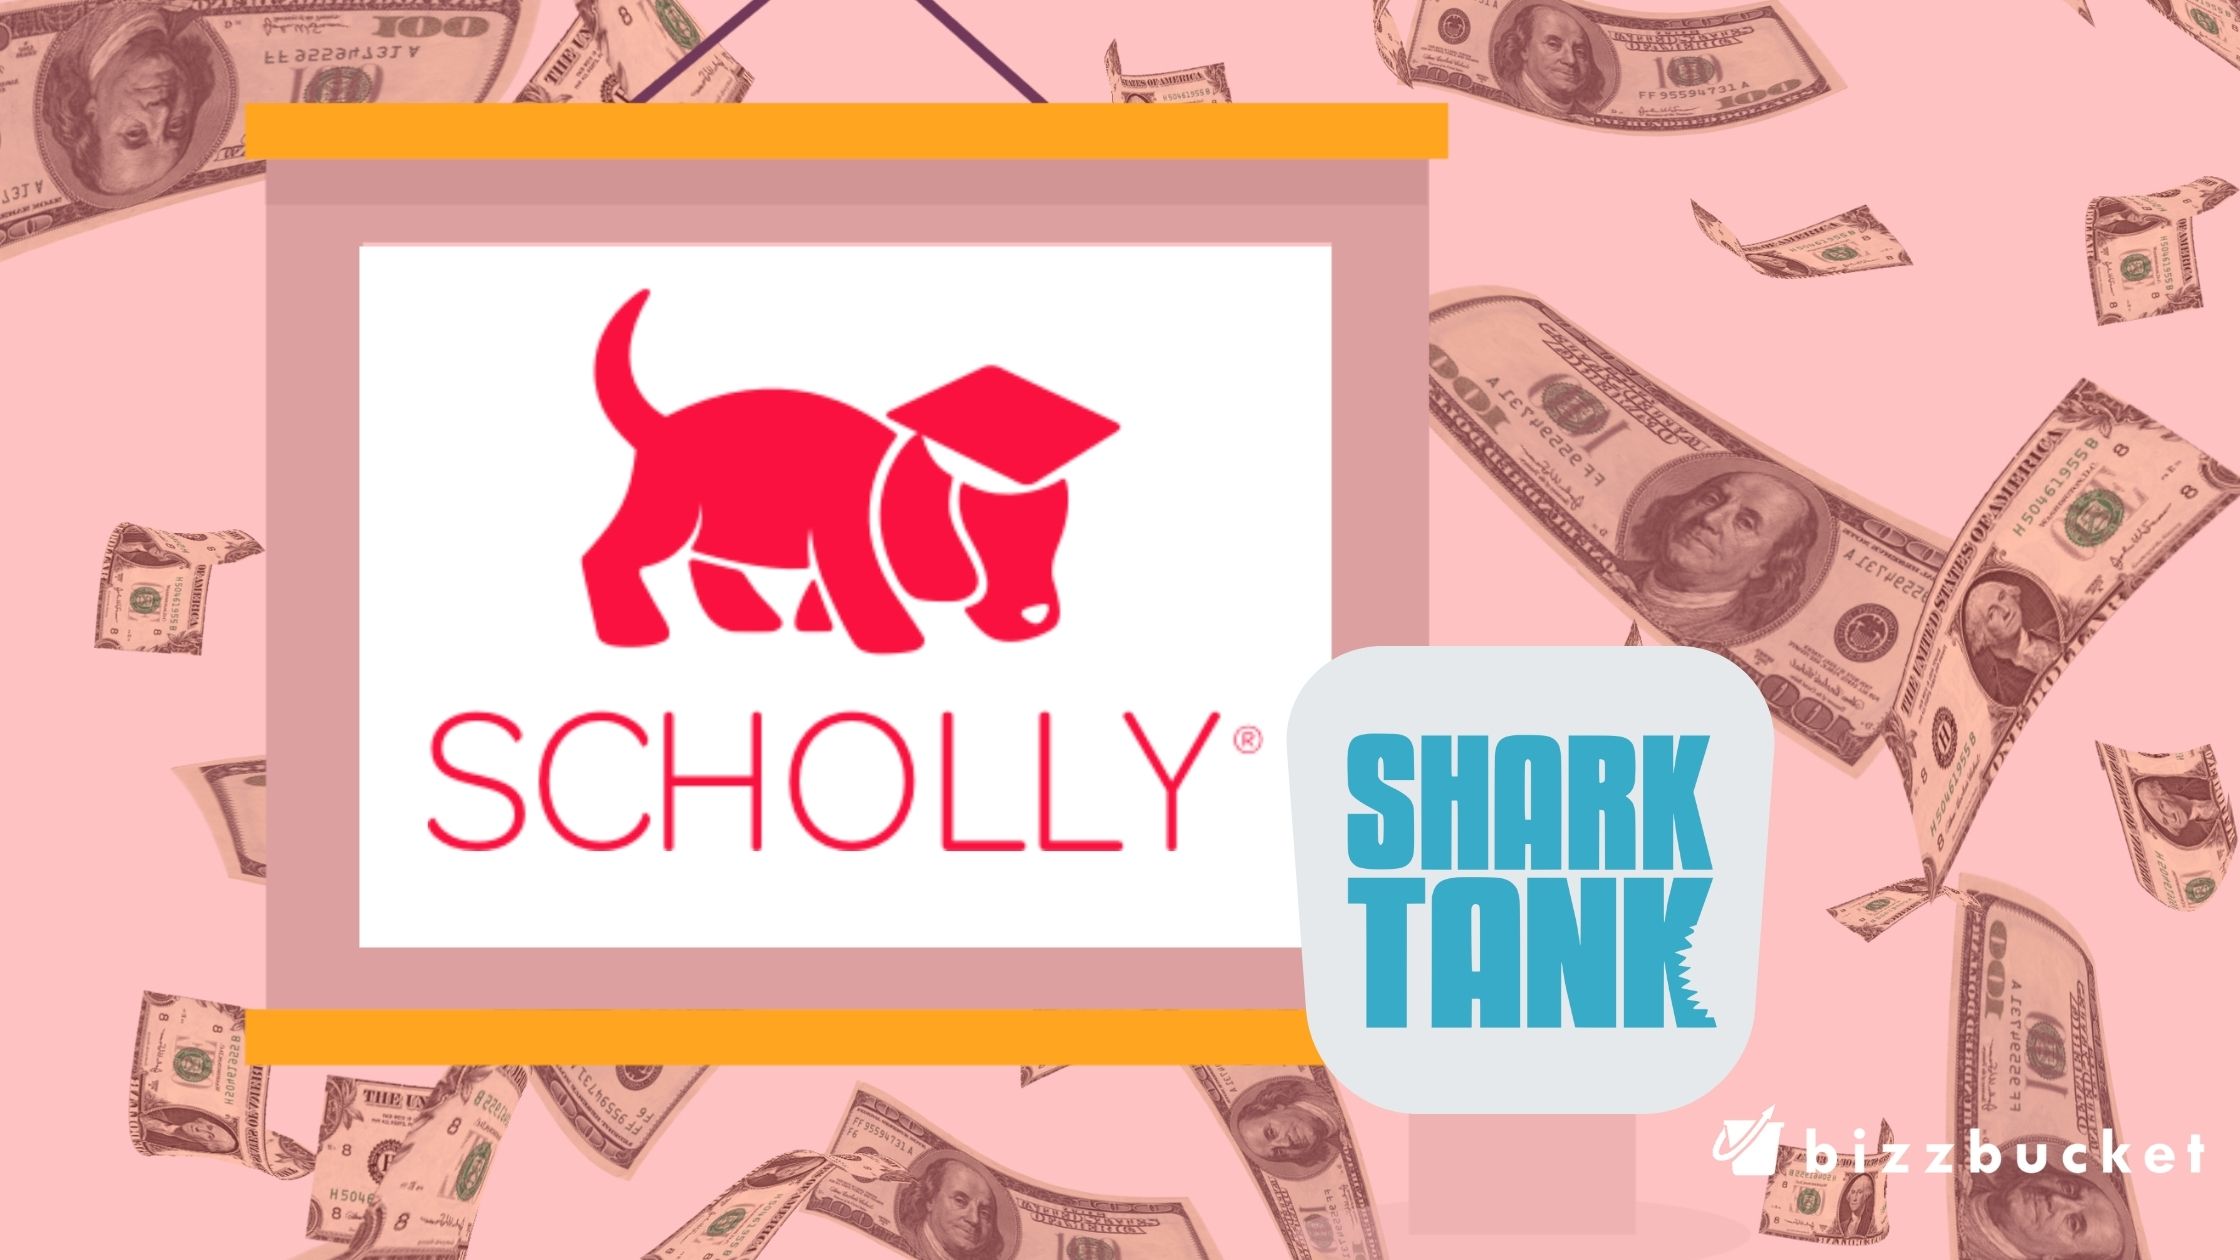 Scholly shark tank update